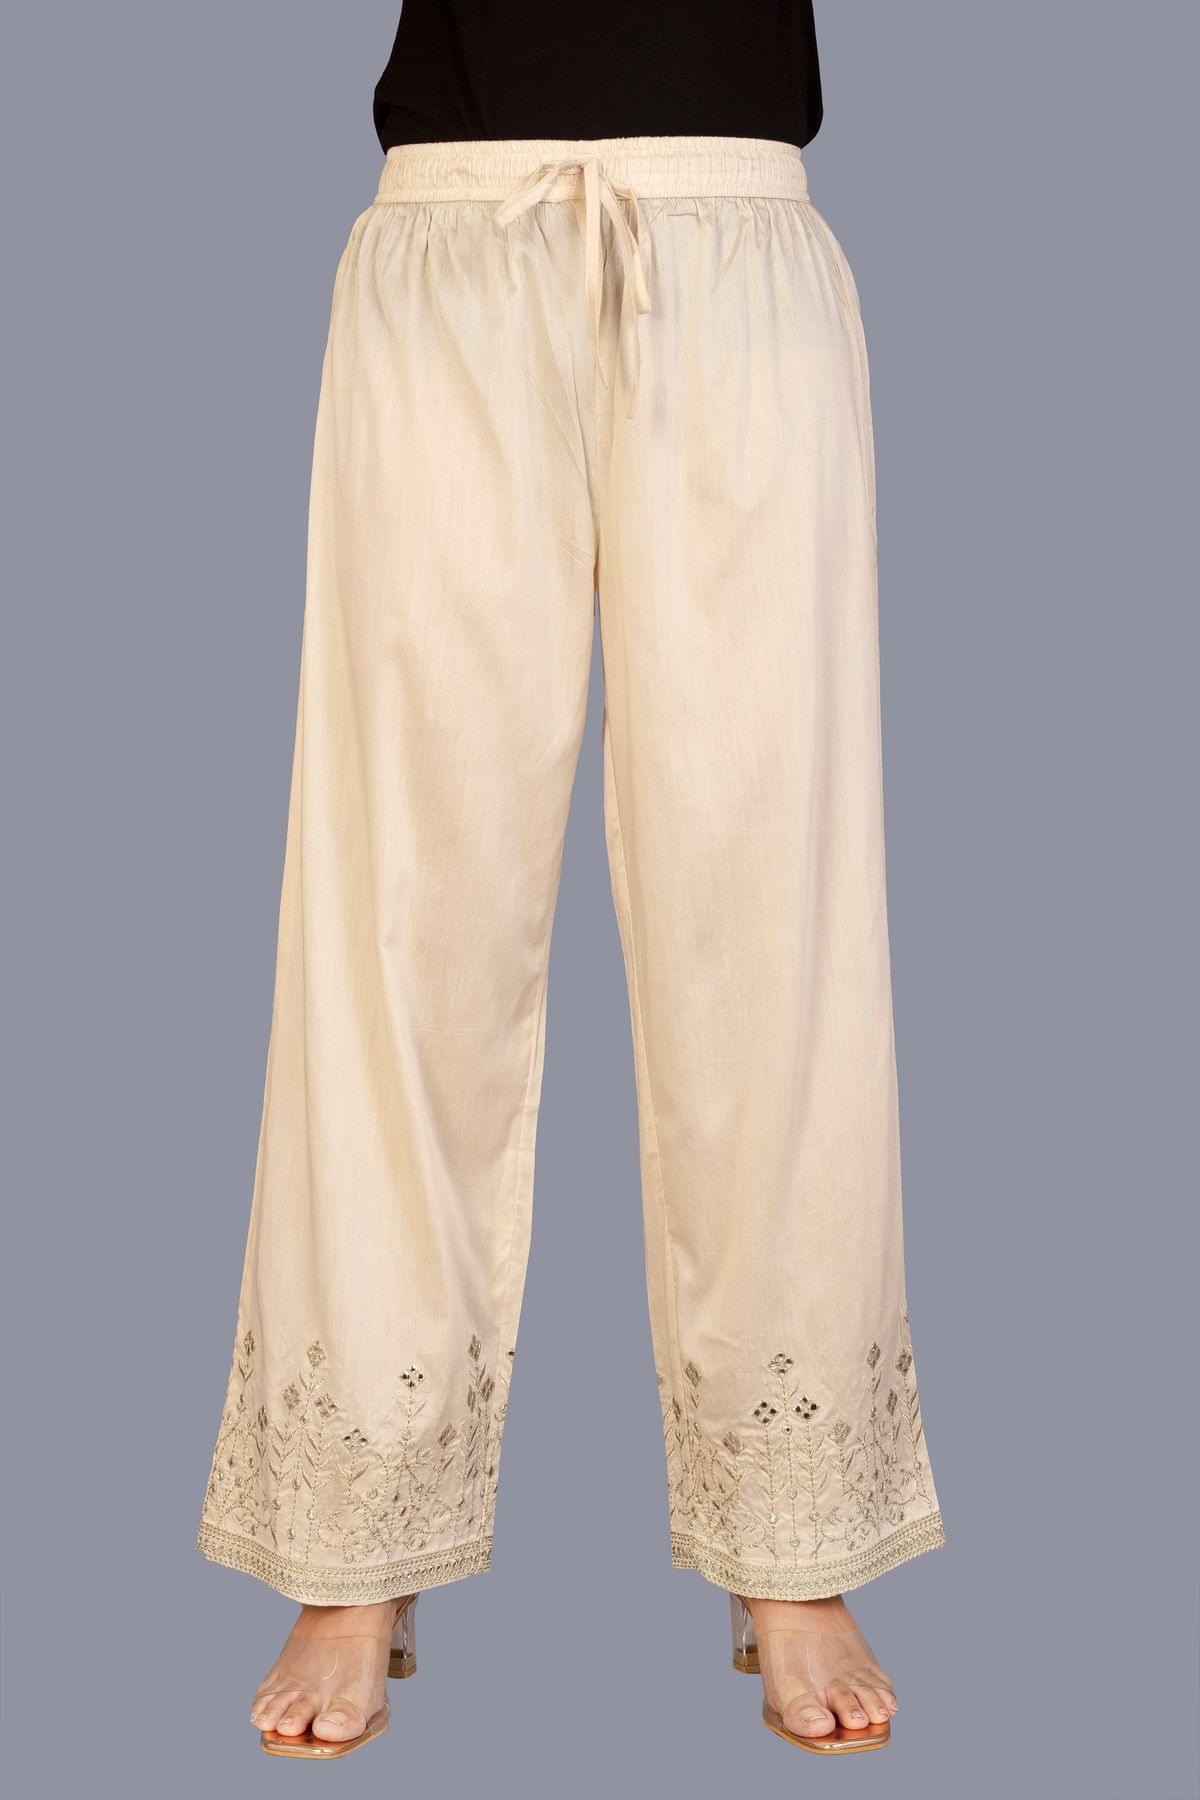 Riviera Lycra Ladies Cotton Palazzo Pants Waist Size 300